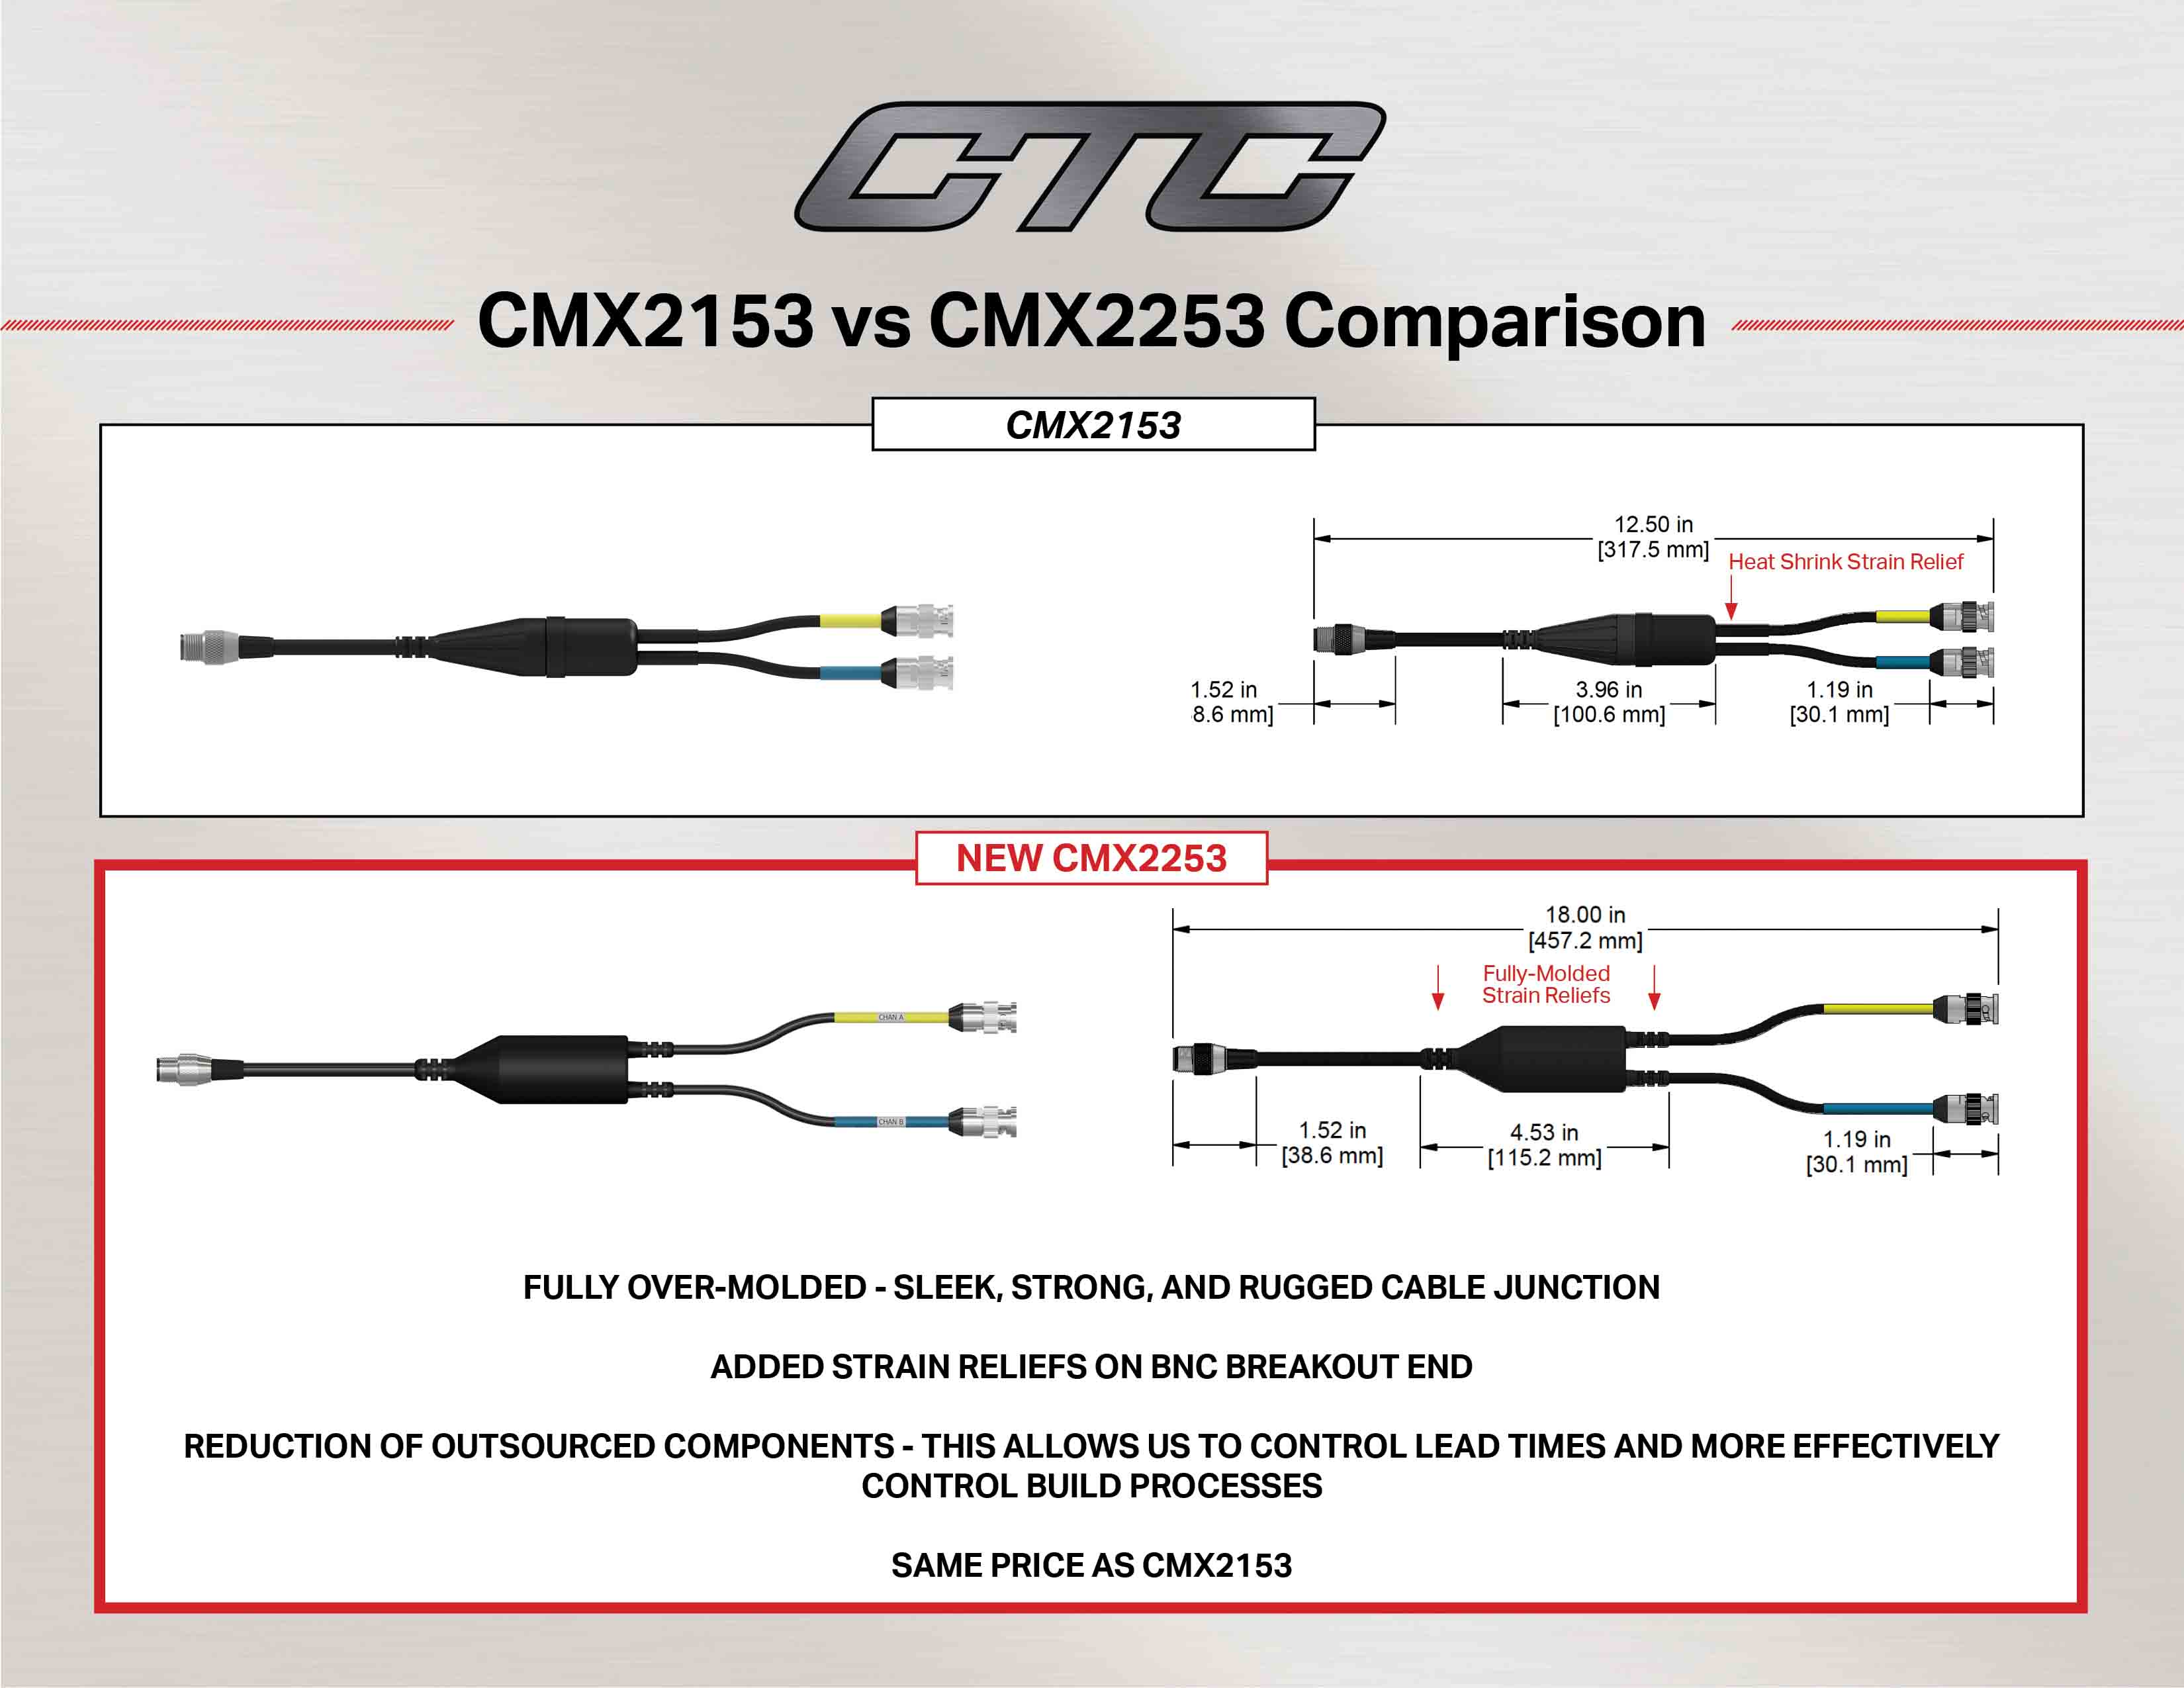 CMX2153 vs CMX2253 cable comparison diagram and measurements